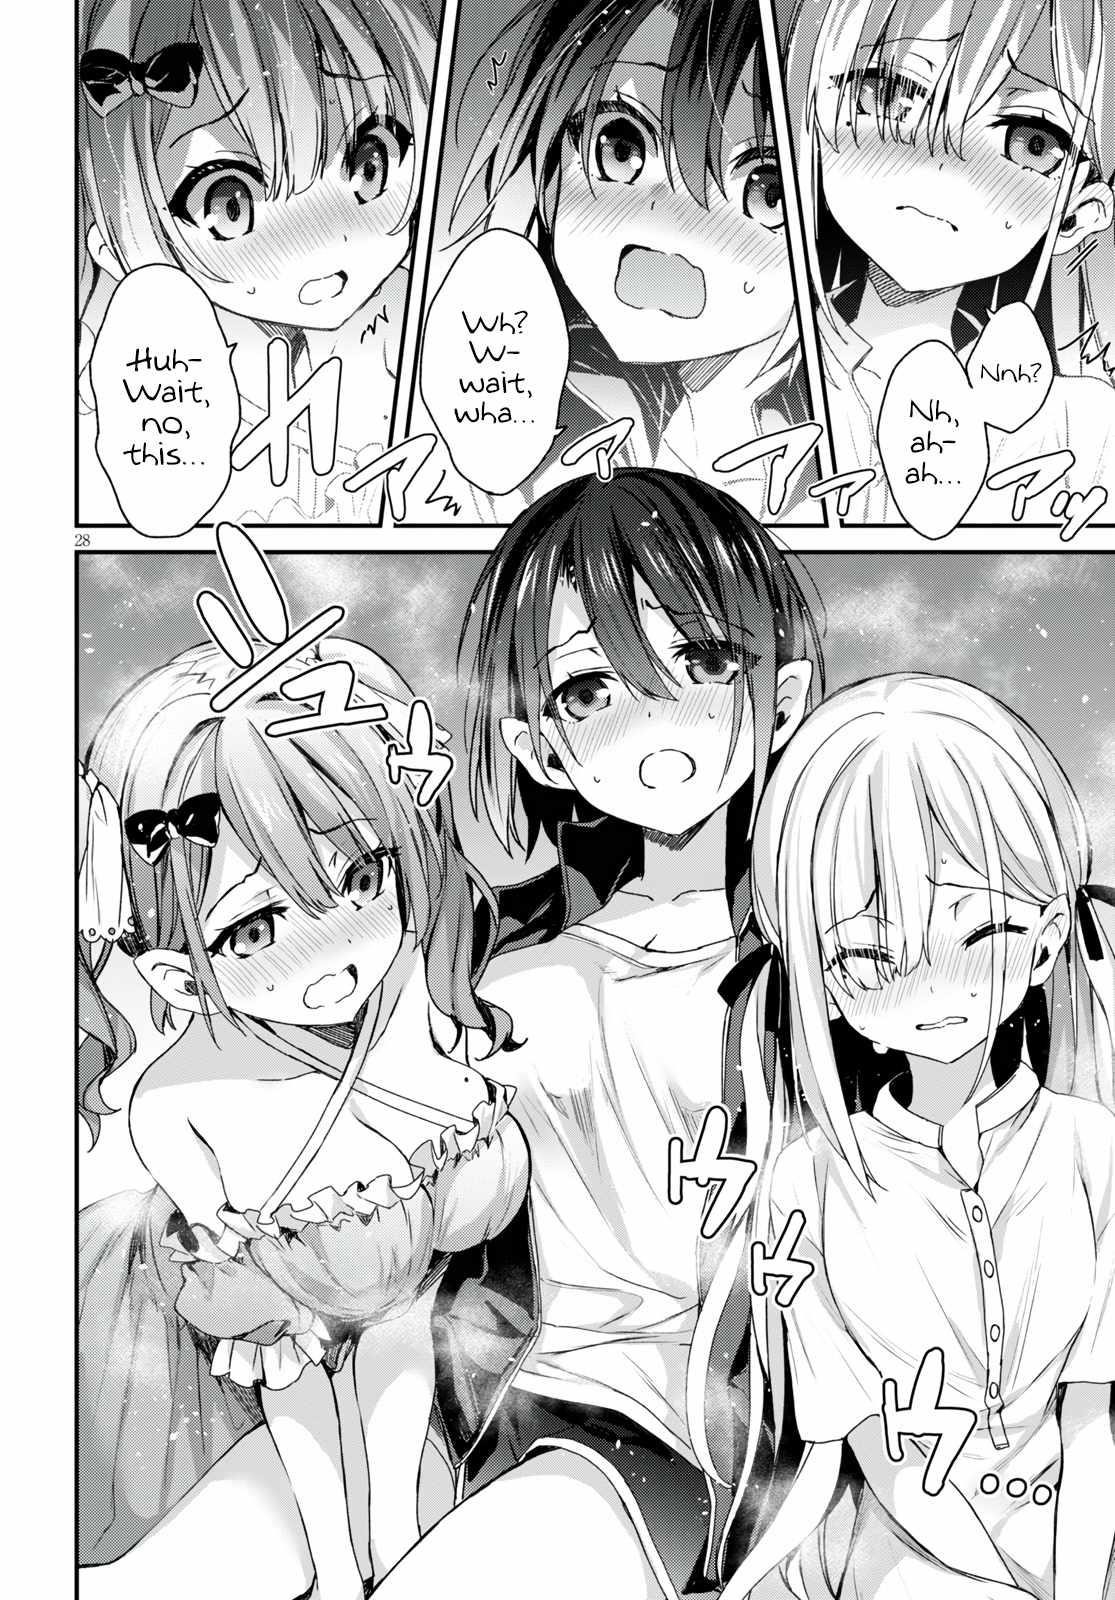 Elf wife. Elf sisters Manga. Elf sisters.